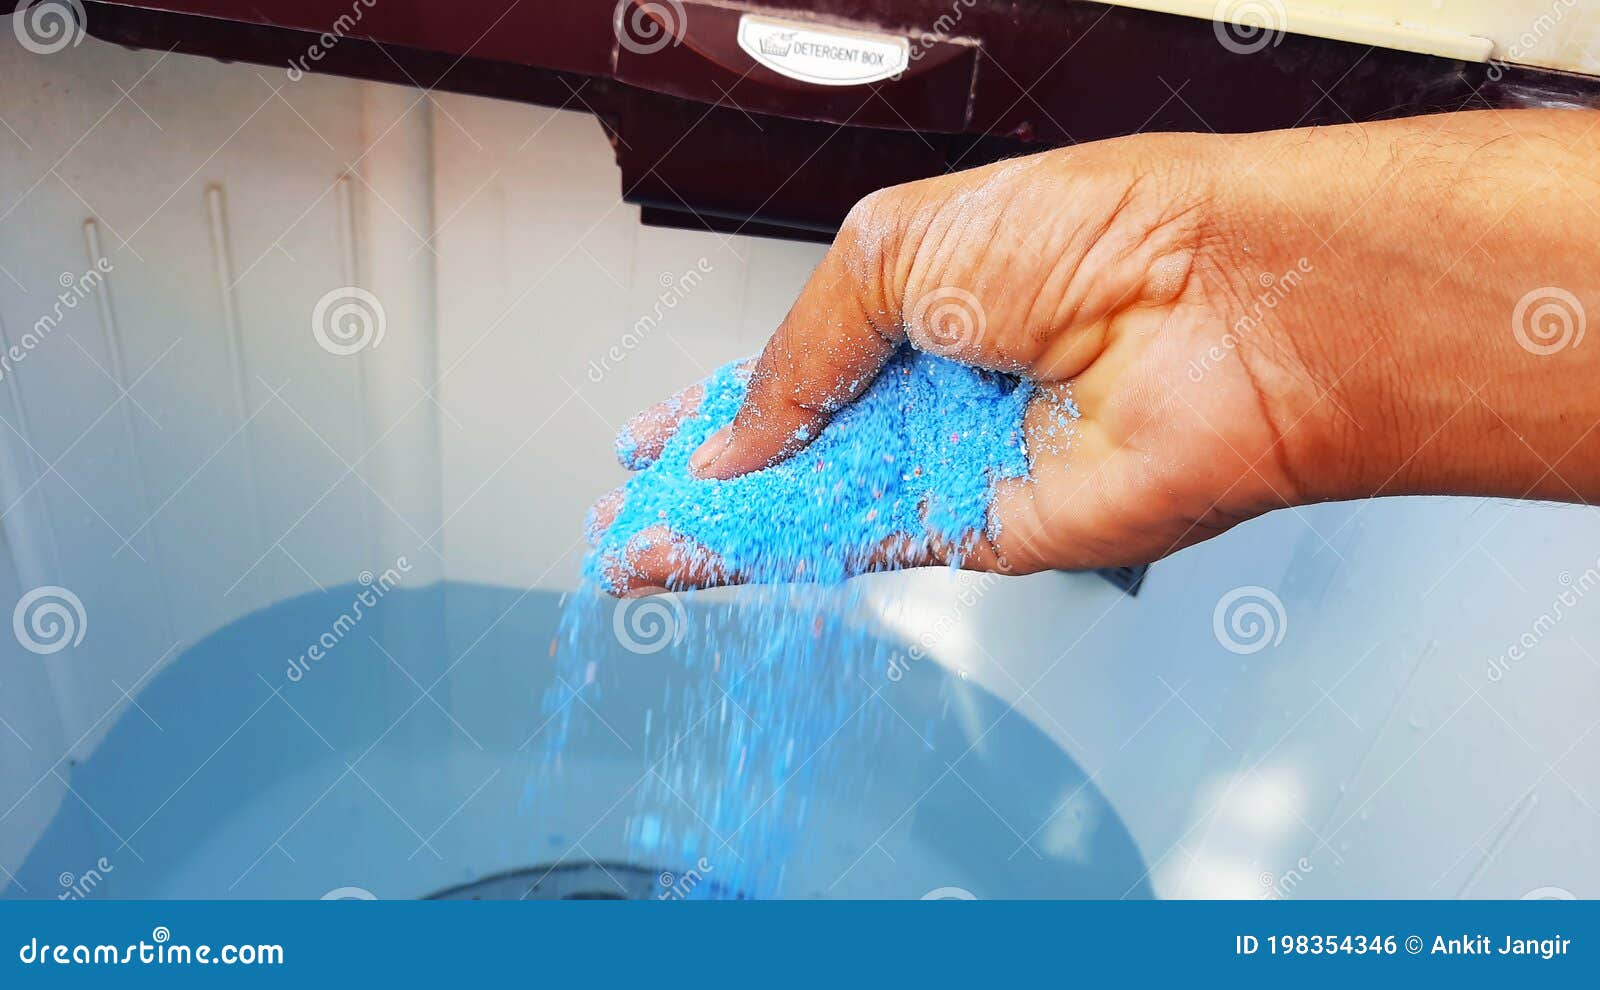 Detergente Azul En Polvo En Las Manos Y Añadirlo En Agua En La Lavadora Con  El Desenfoque En Movimiento Foto de archivo - Imagen de hembra, limpiador:  198354346